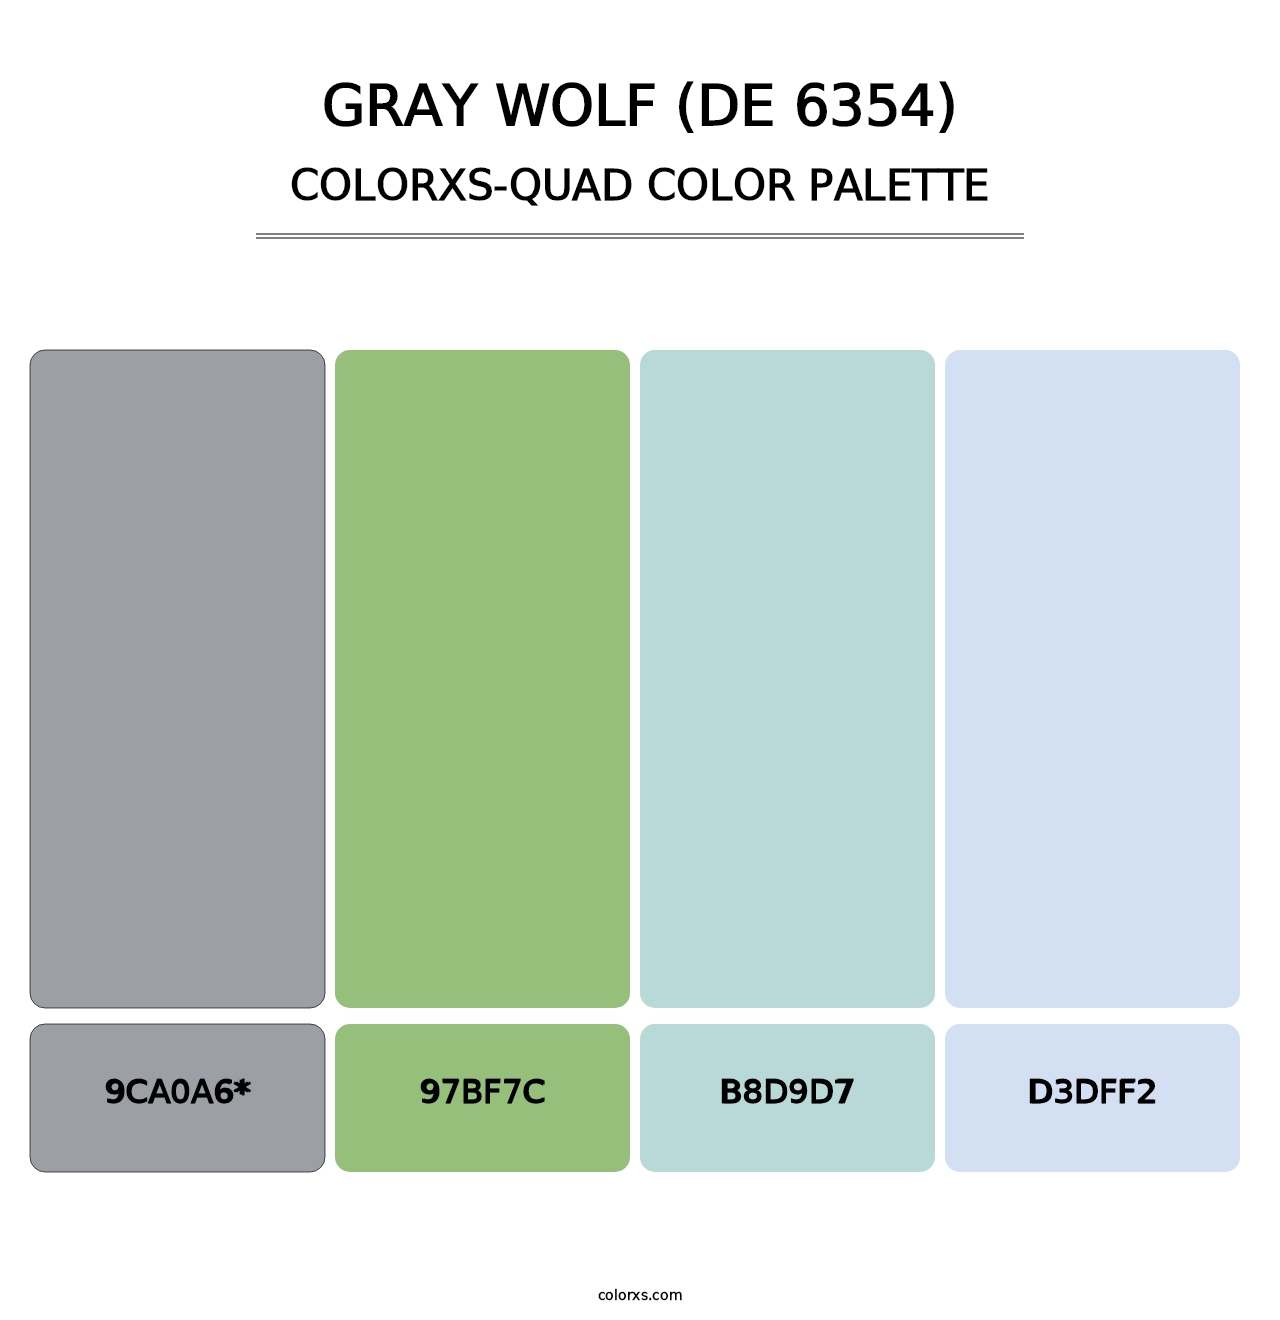 Gray Wolf (DE 6354) - Colorxs Quad Palette